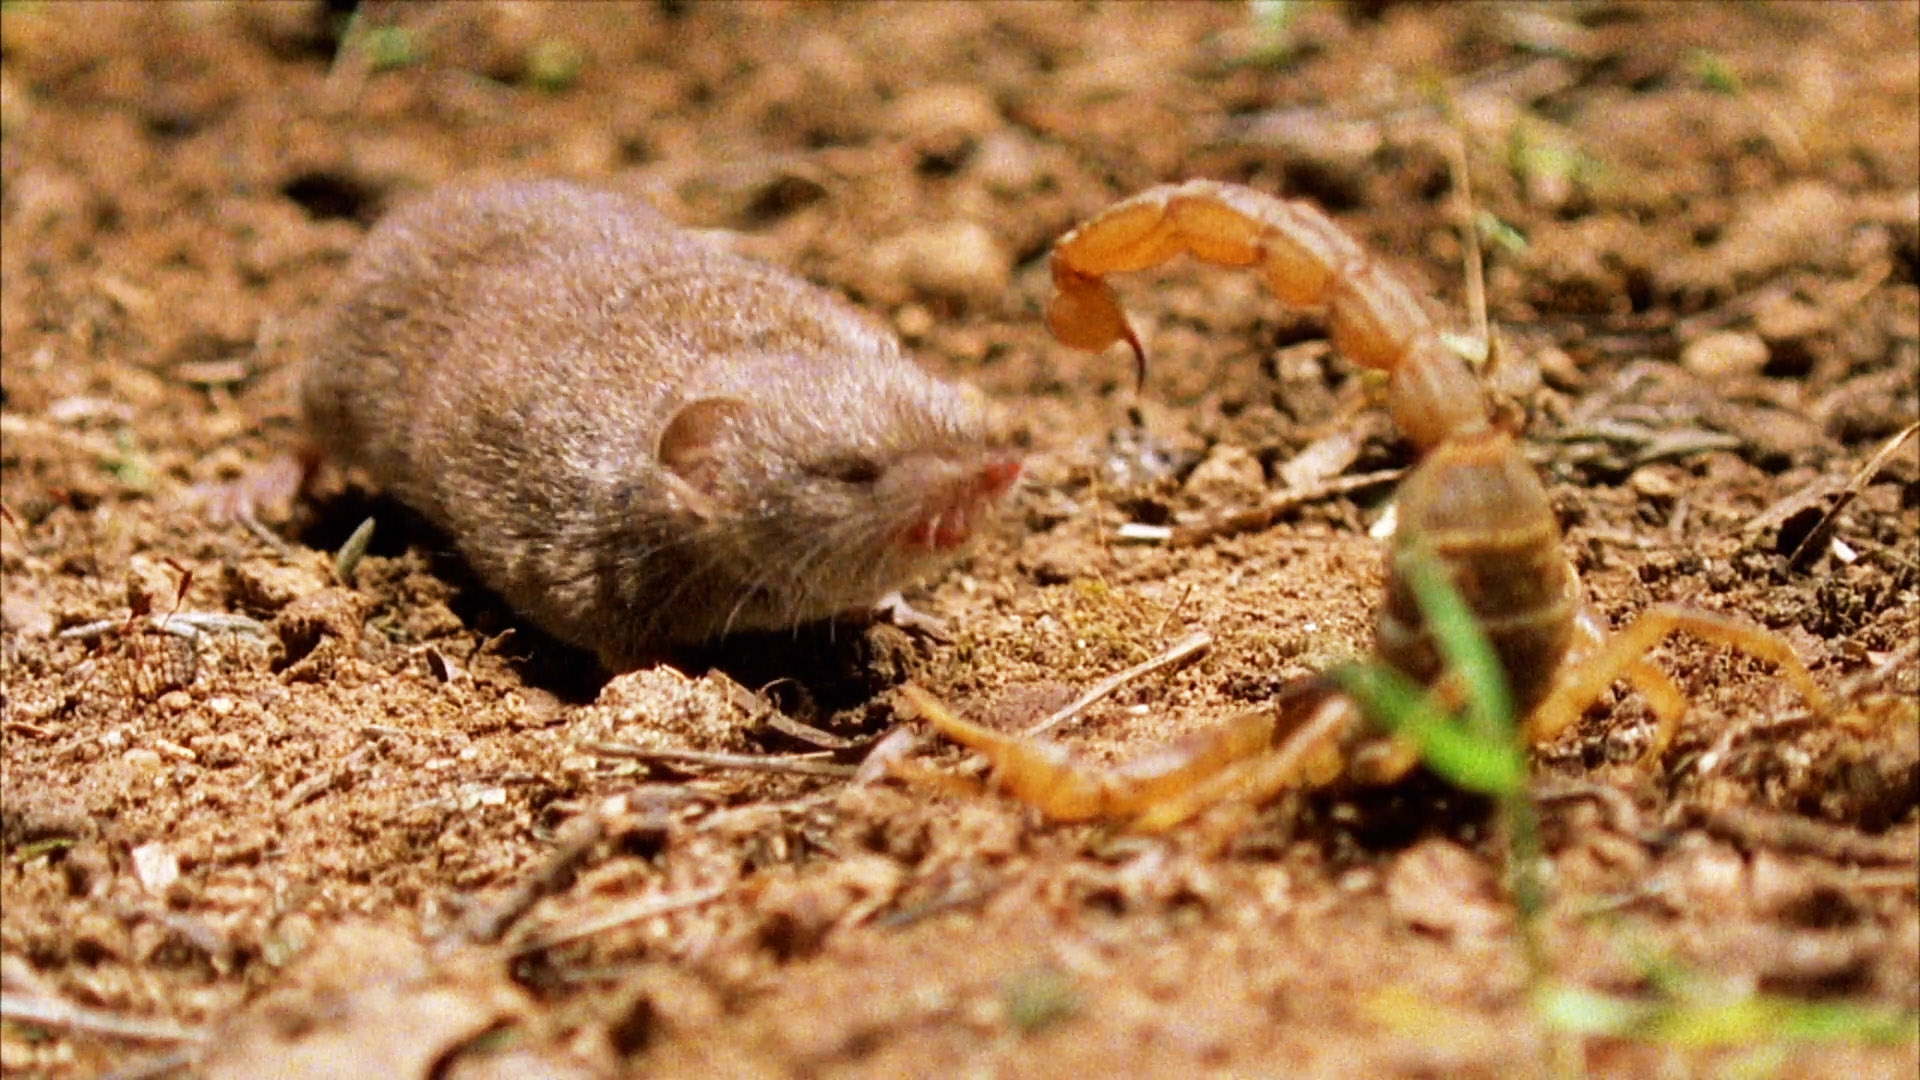 Σκορπιός εναντίον μυγαλής : Η μάχη των δυο μικρών ζώων που προκαλεί έκπληξη (βίντεο)